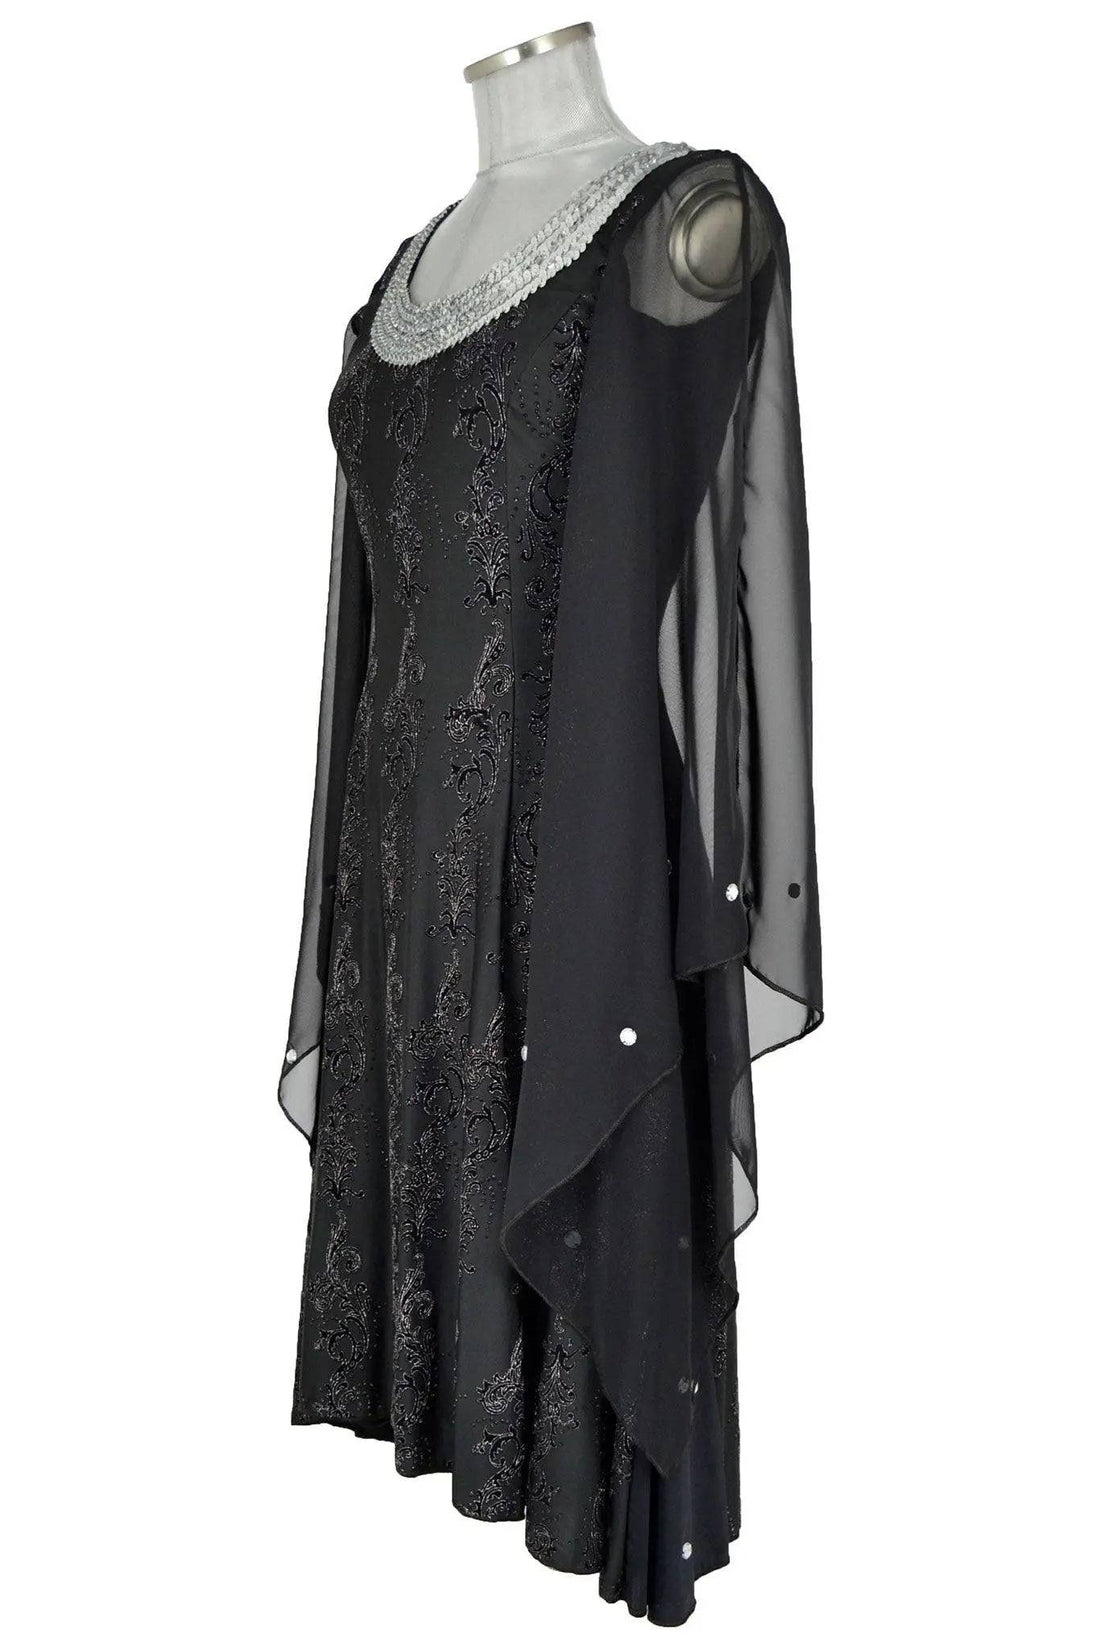 Noleggio abito donna orientale, per serate gothic -Halloween-carnevale